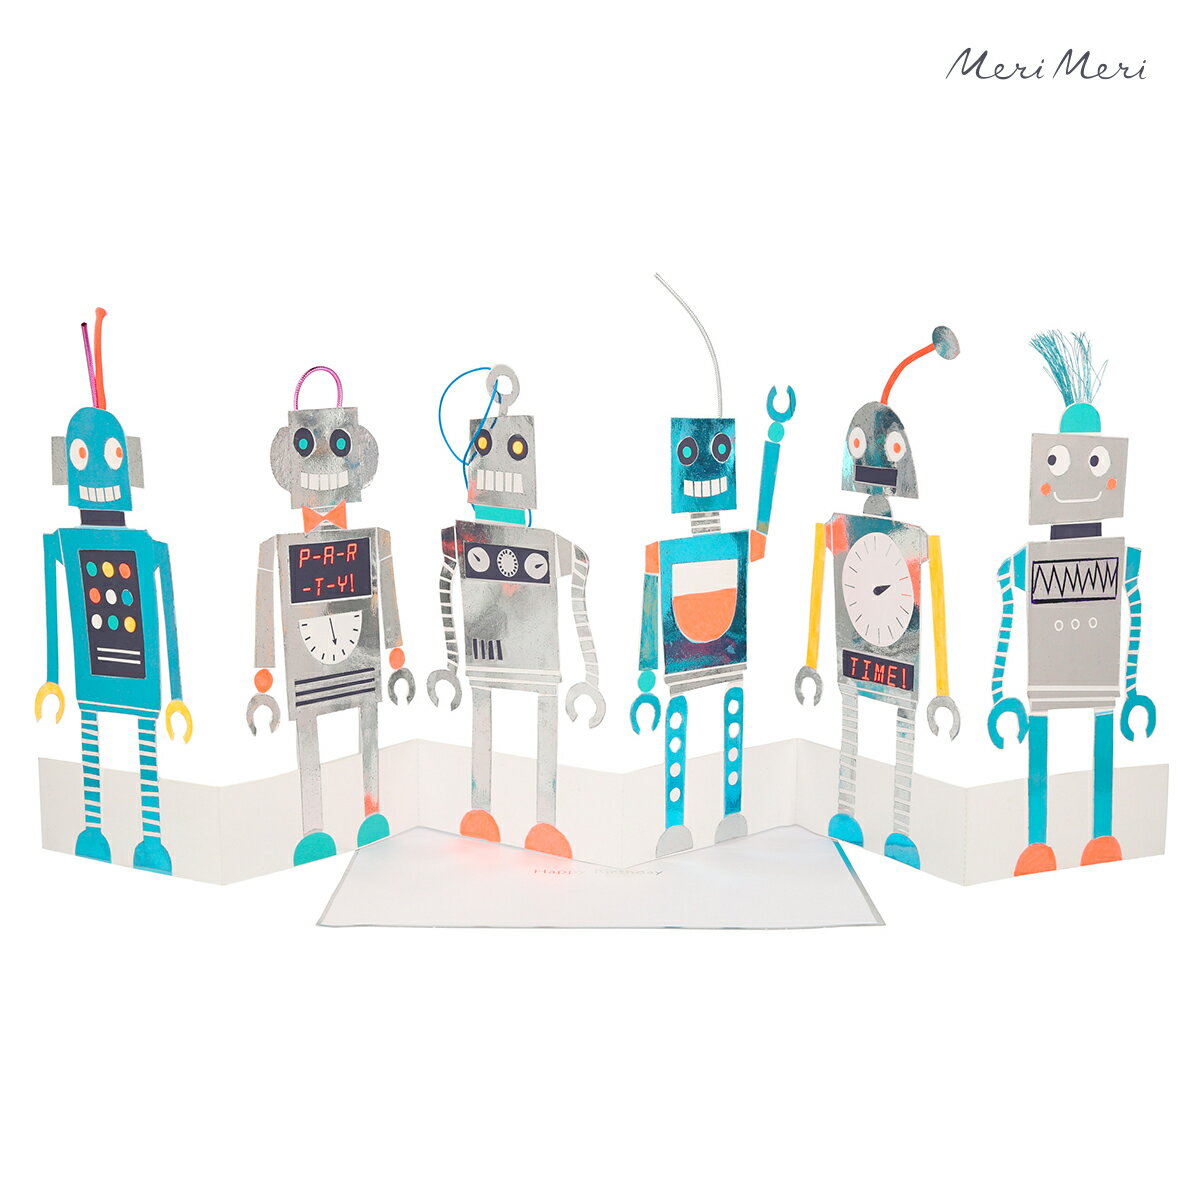 バースデーカード 誕生日カード Birthday Cards おしゃれ かわいい ロボット 折りたたみ式 グリーティングカード 輸入カード メッセージカード merimeri メリメリ Happy Birthday Concertina Card robot